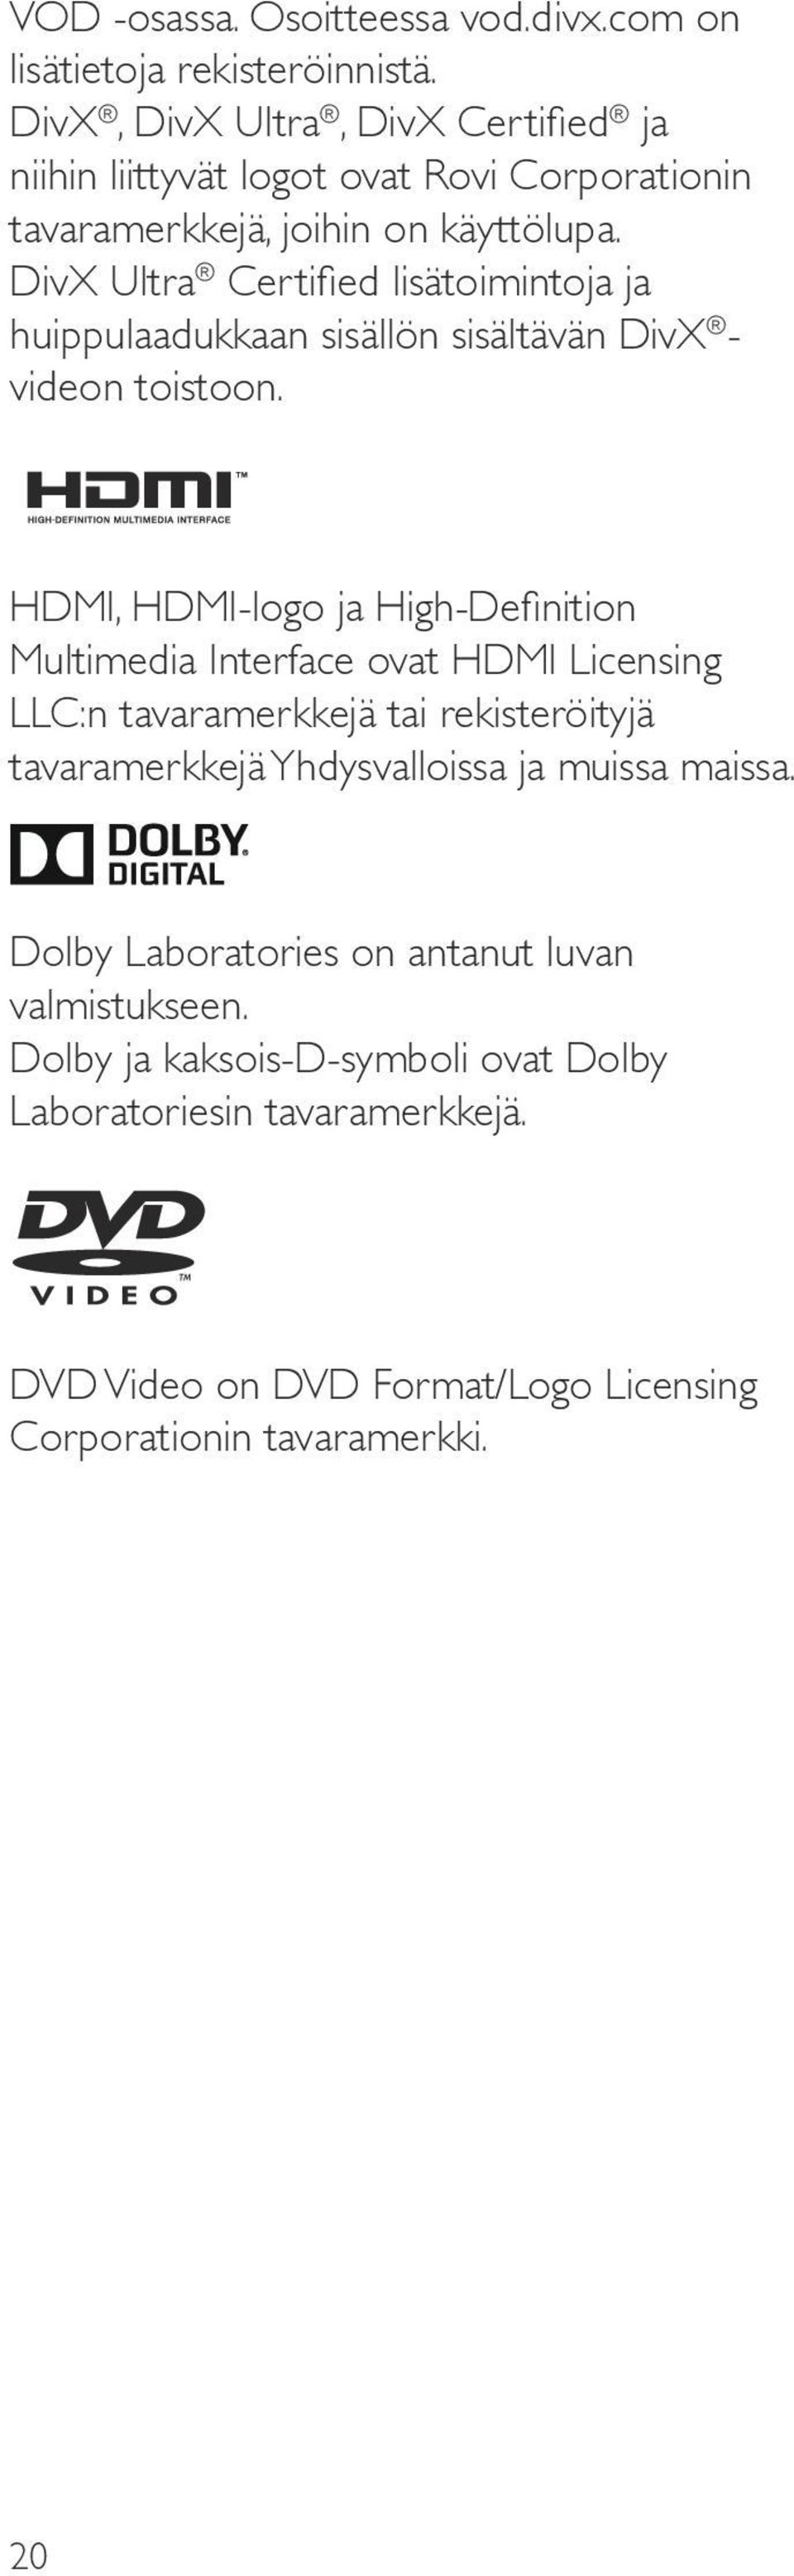 DivX Ultra Certified lisätoimintoja ja huippulaadukkaan sisällön sisältävän DivX - videon toistoon.